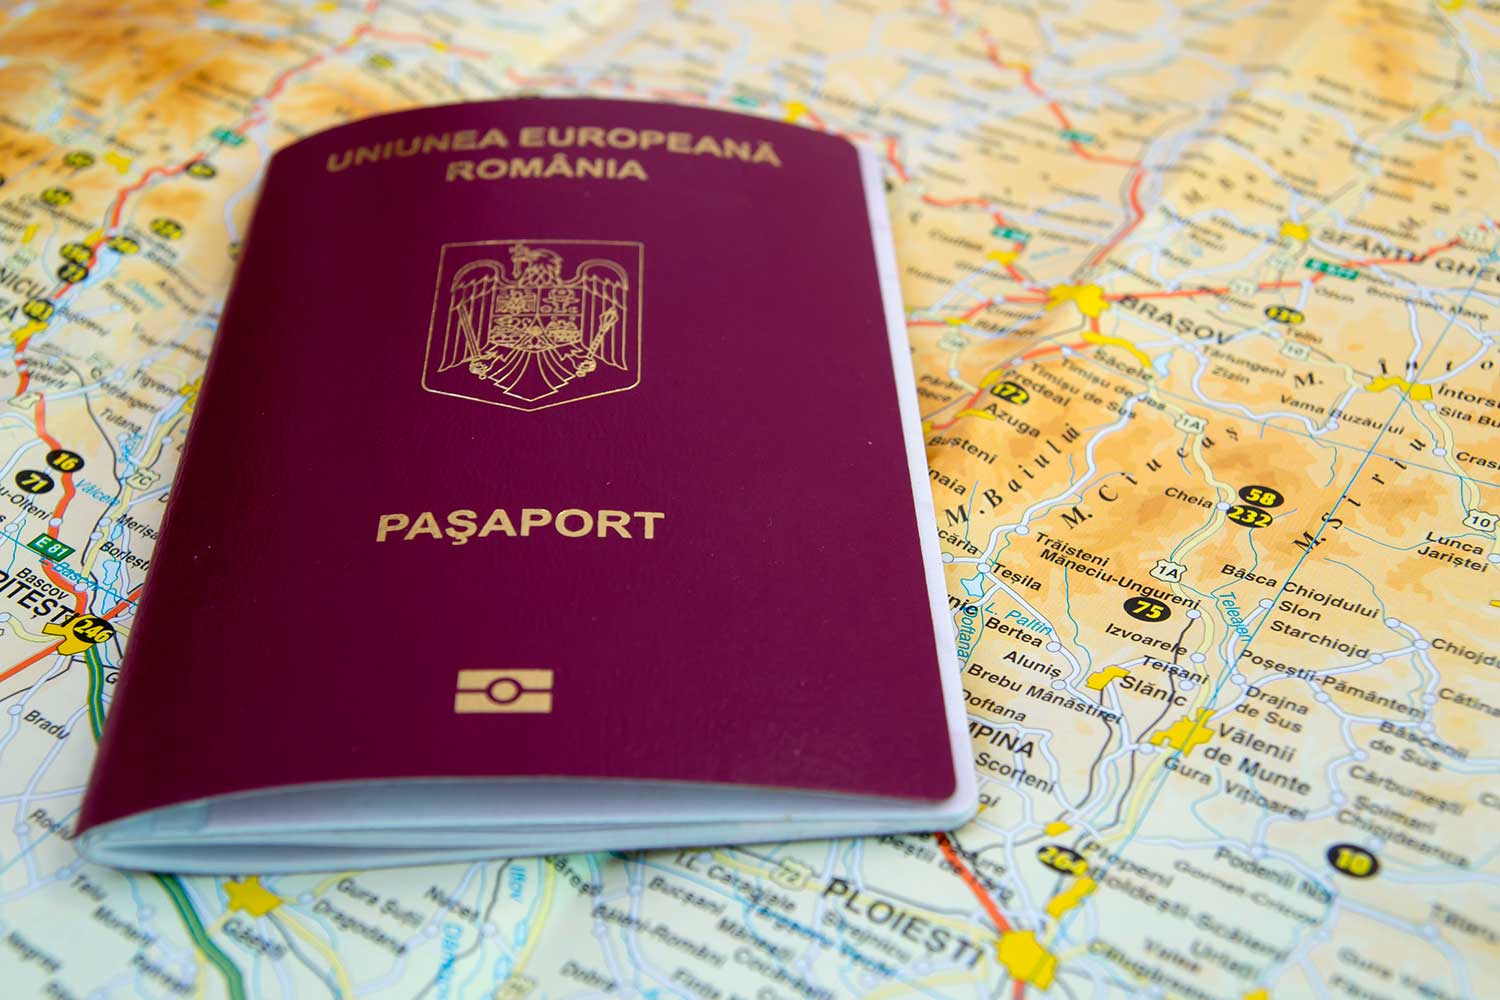 Репатриация в румынию - программа восстановления румынского гражданства